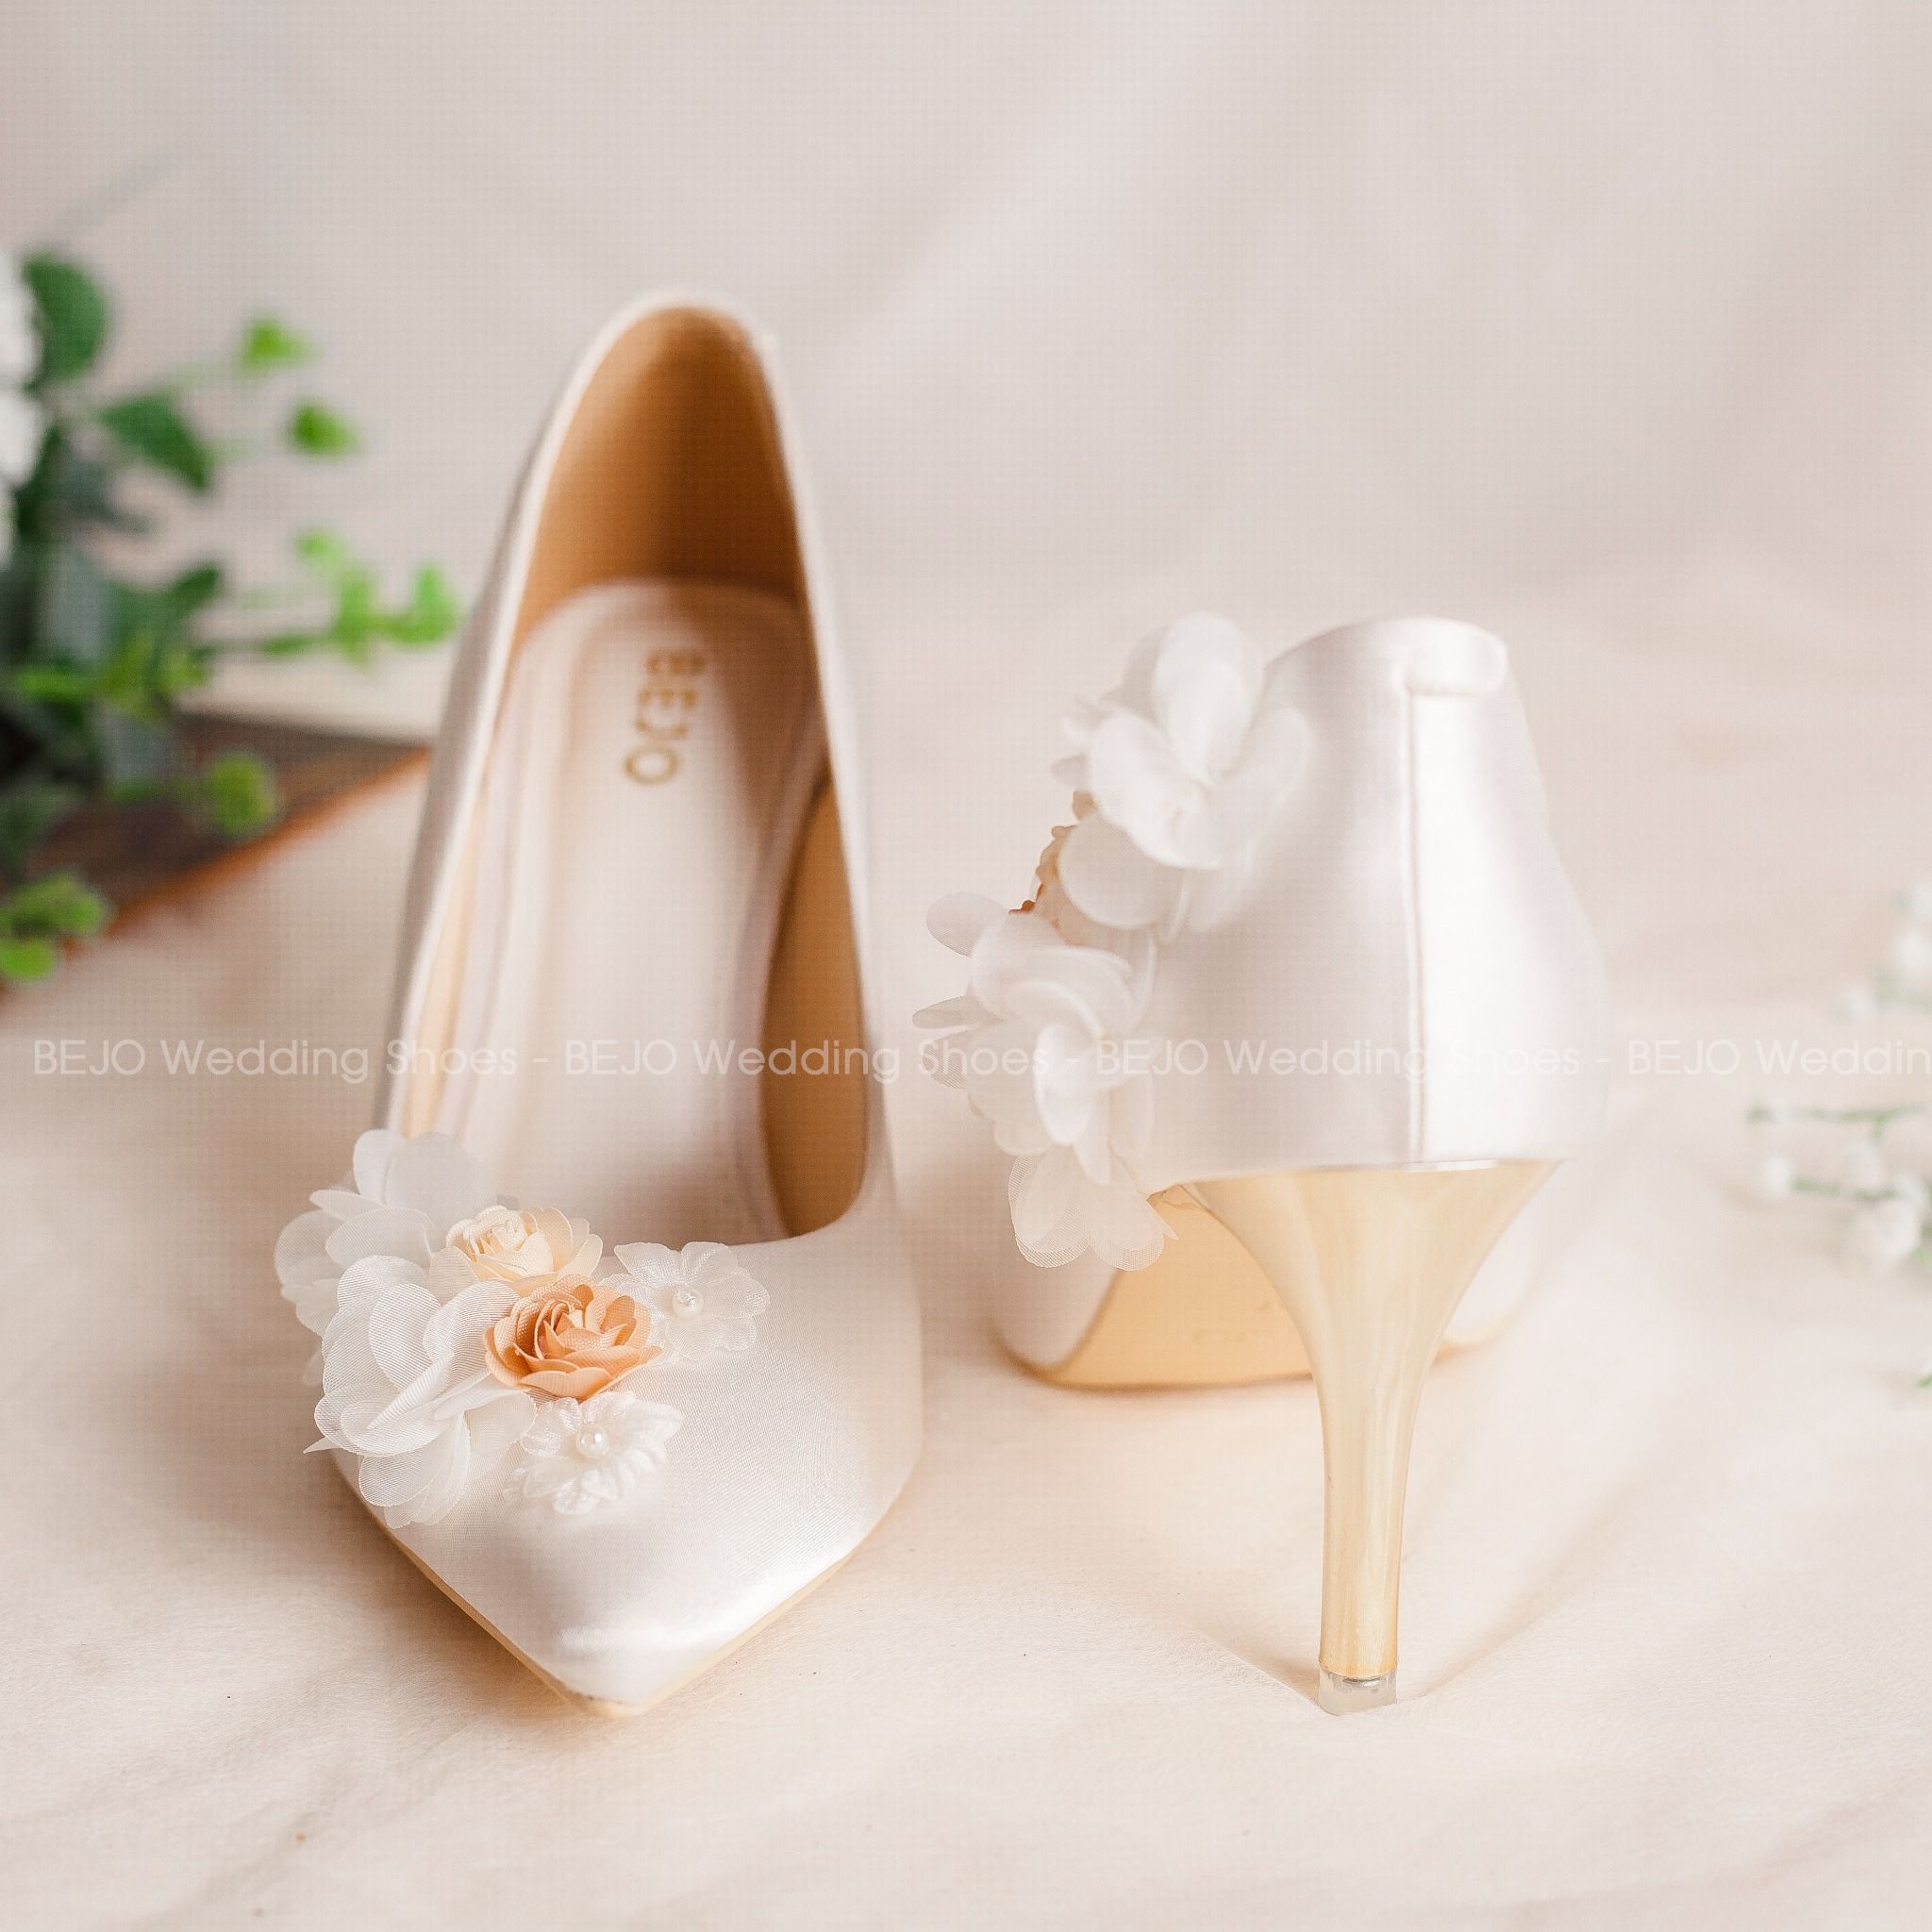  Giày cưới - Giày cô dâu cao cấp BEJO H85.04.TRANGLUA.HOAVOANLUA 